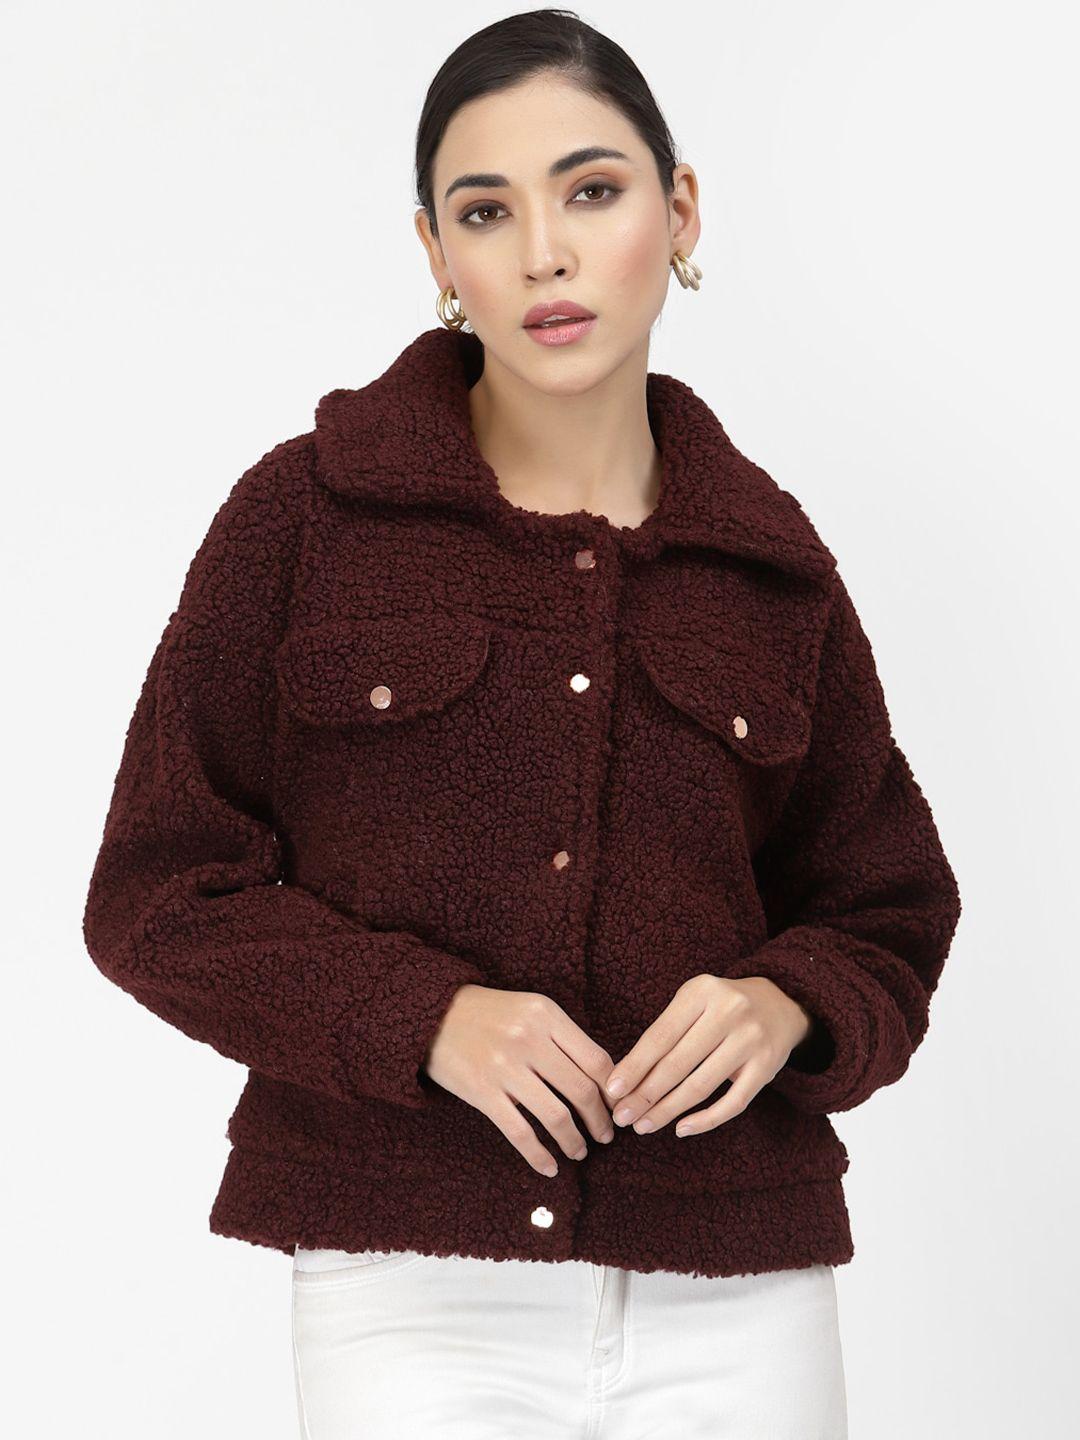 juelle-women-maroon-long-sleeves-fleece-sweatshirt